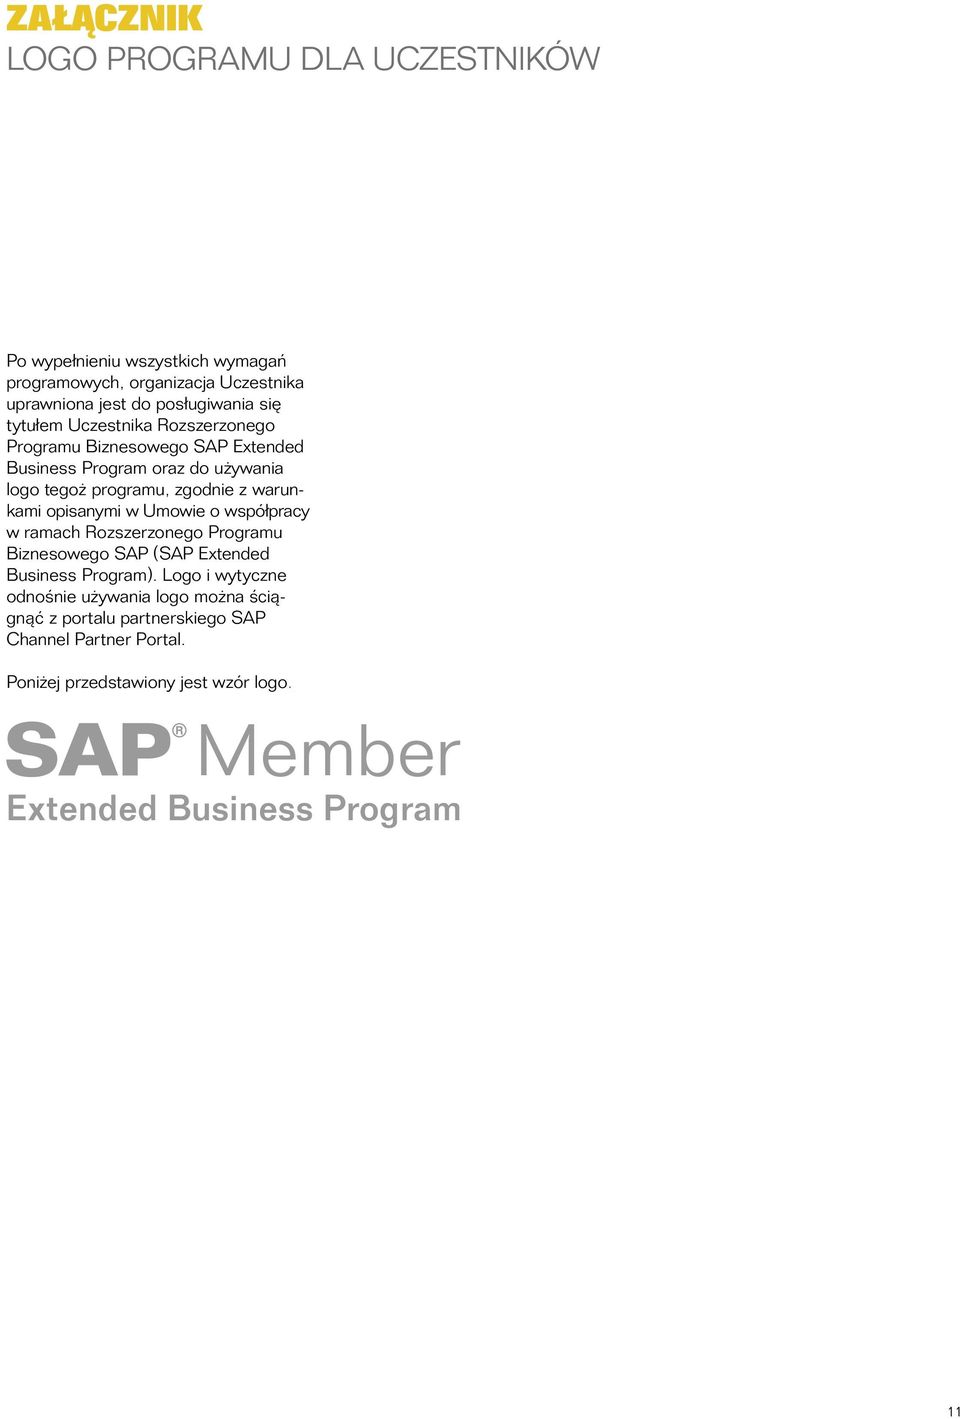 programu, zgodnie z warunkami opisanymi w Umowie o współpracy w ramach Rozszerzonego Programu Biznesowego SAP (SAP Extended Business